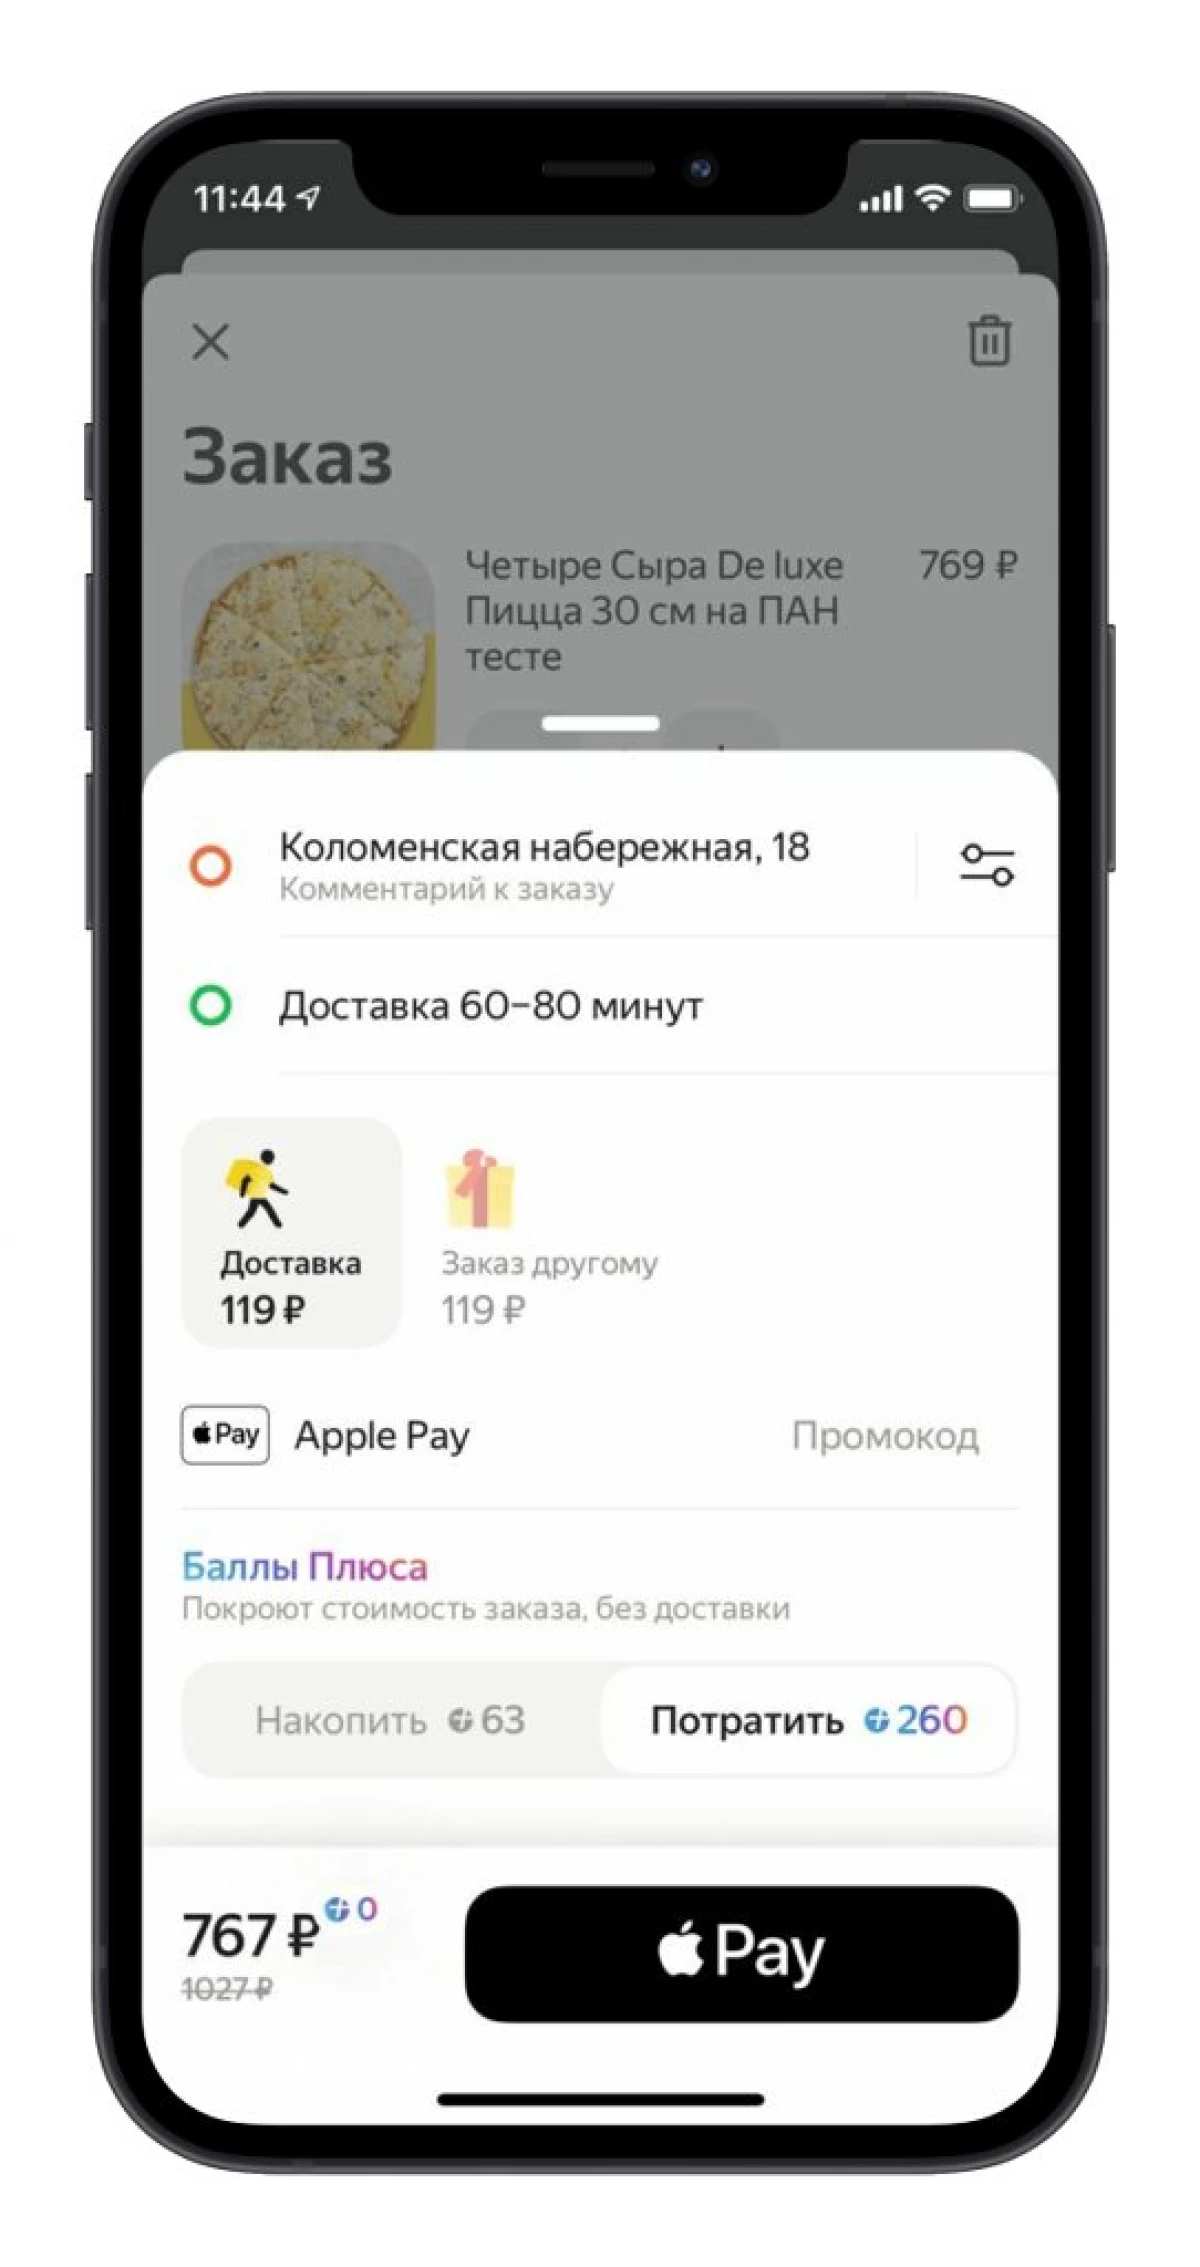 Яндексҳо нуқтаҳои "плюс" -ро дар аризаҳои "ғизо" ва "чангол" додан мумкин аст